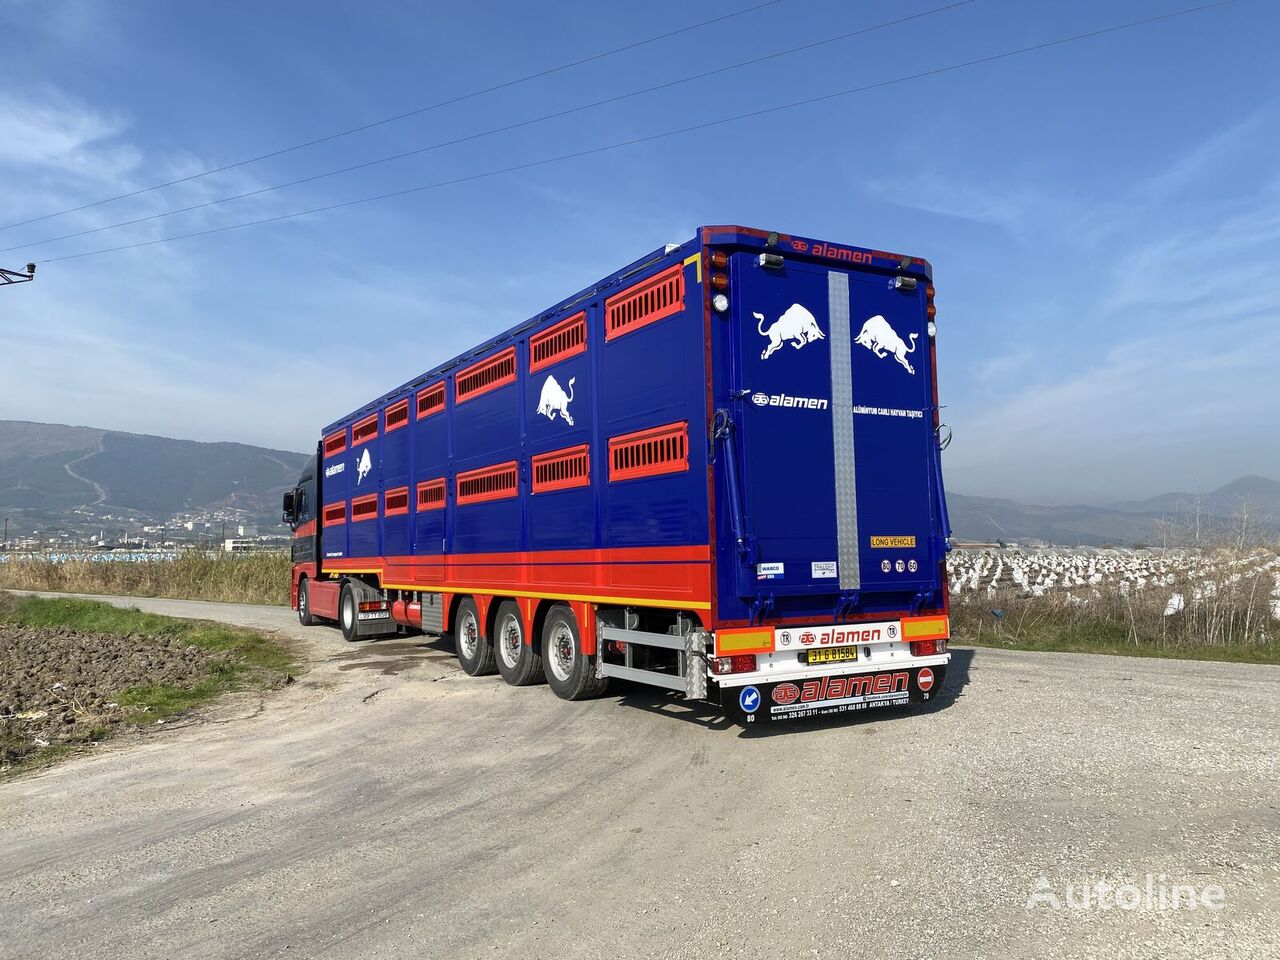 ny ALAMEN livestock transport trailer semitrailer dyretransport